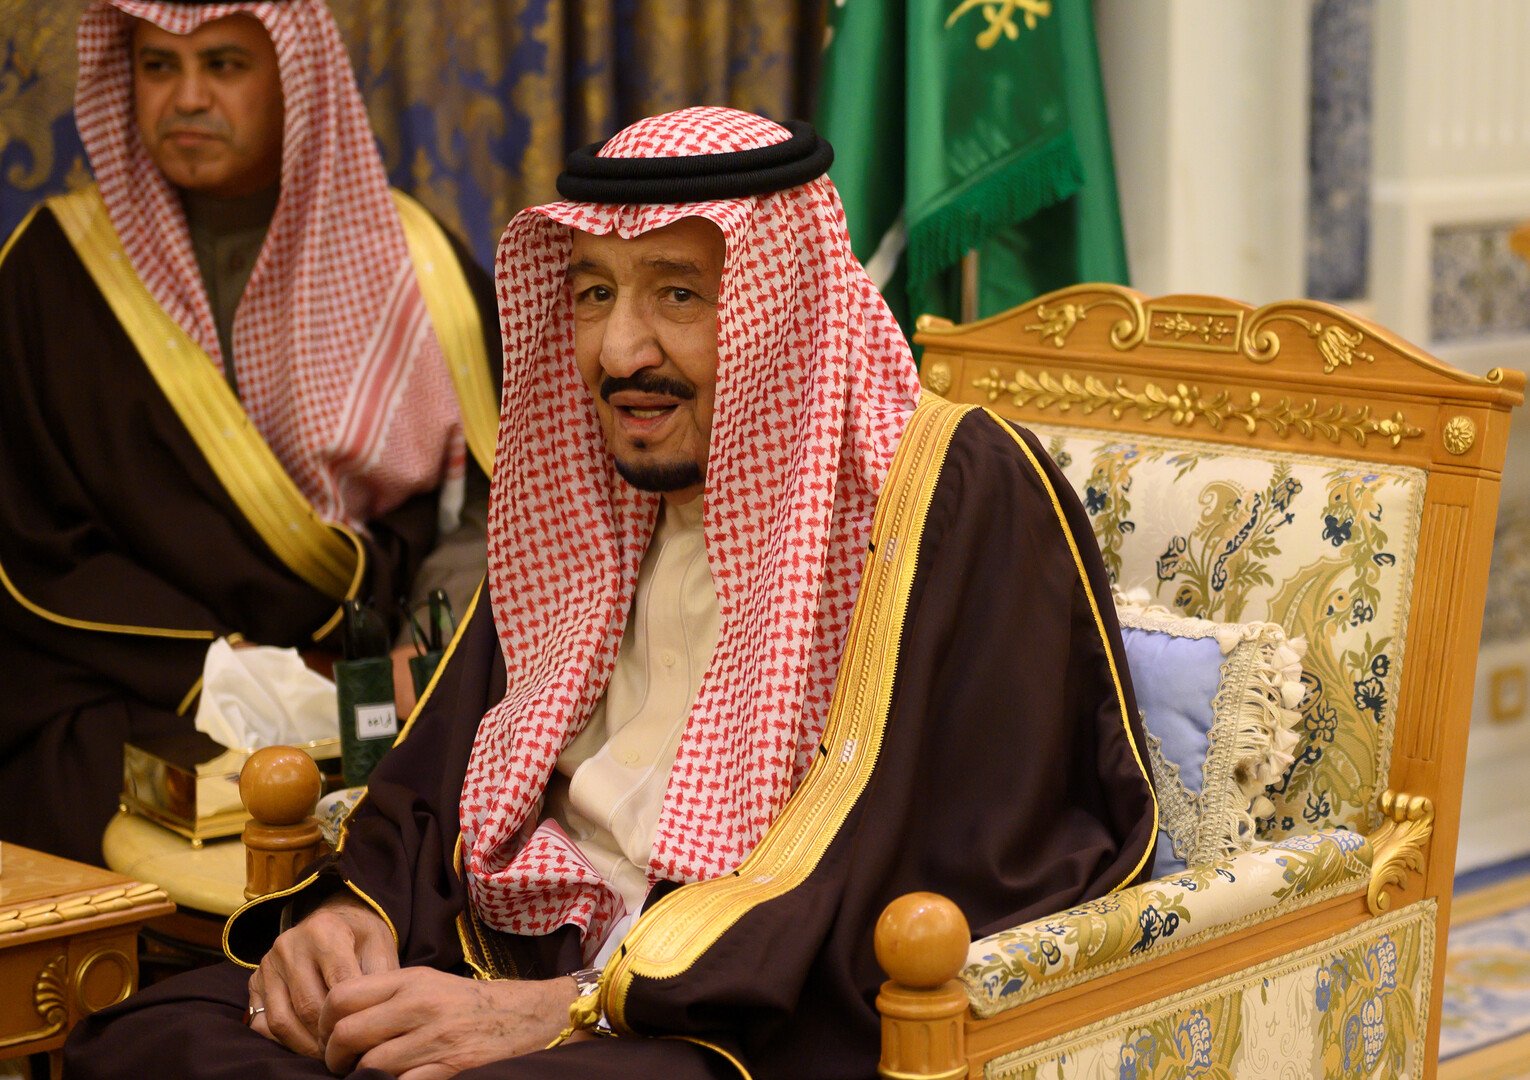 الملك سلمان يؤكد أن السعودية ستدافع عن أراضيها ومنشآتها أيا كان مصدر هذه الهجمات